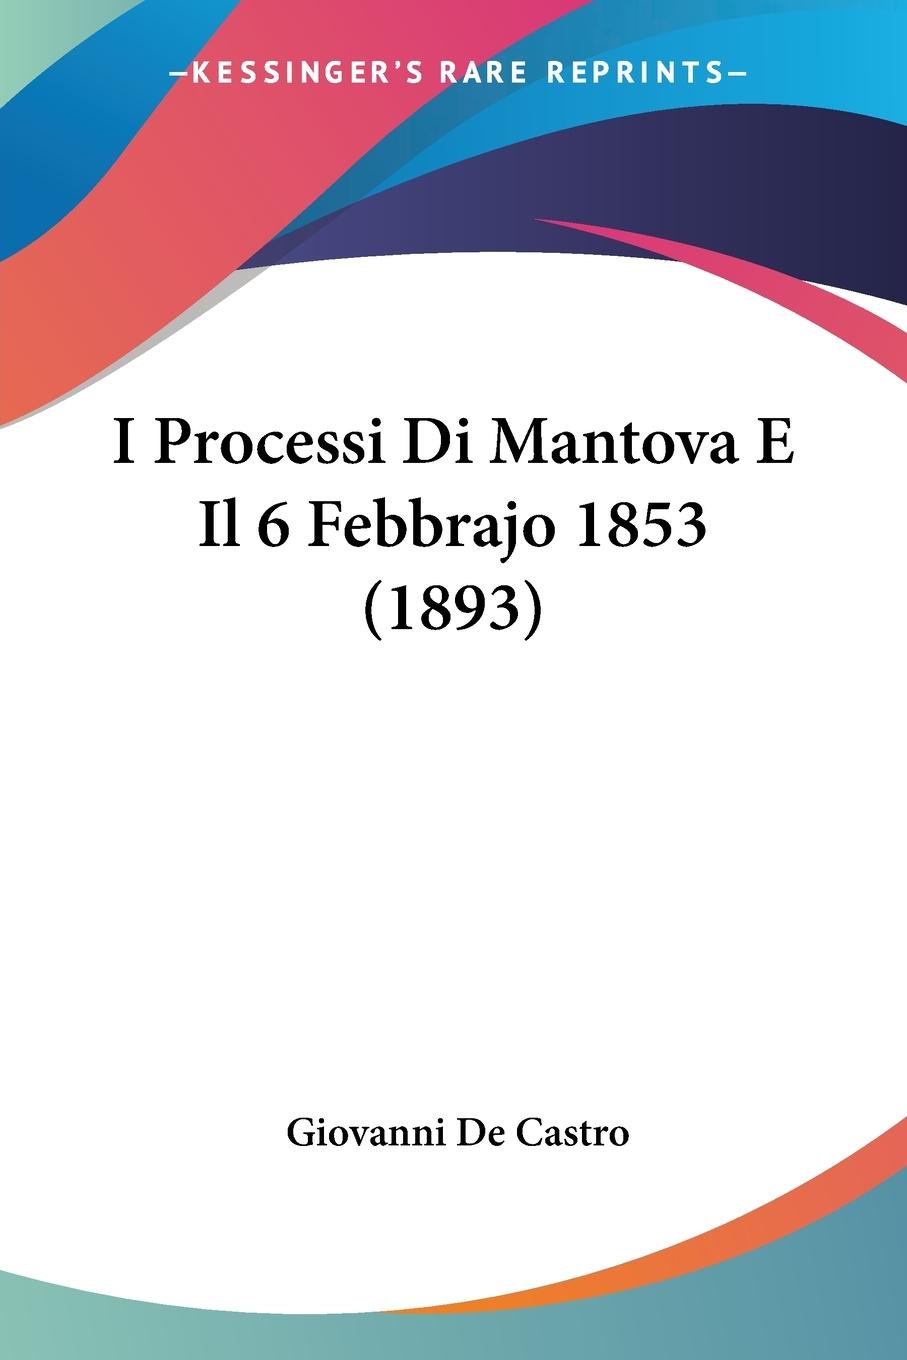 I Processi Di Mantova E Il 6 Febbrajo 1853 (1893) - De Castro, Giovanni